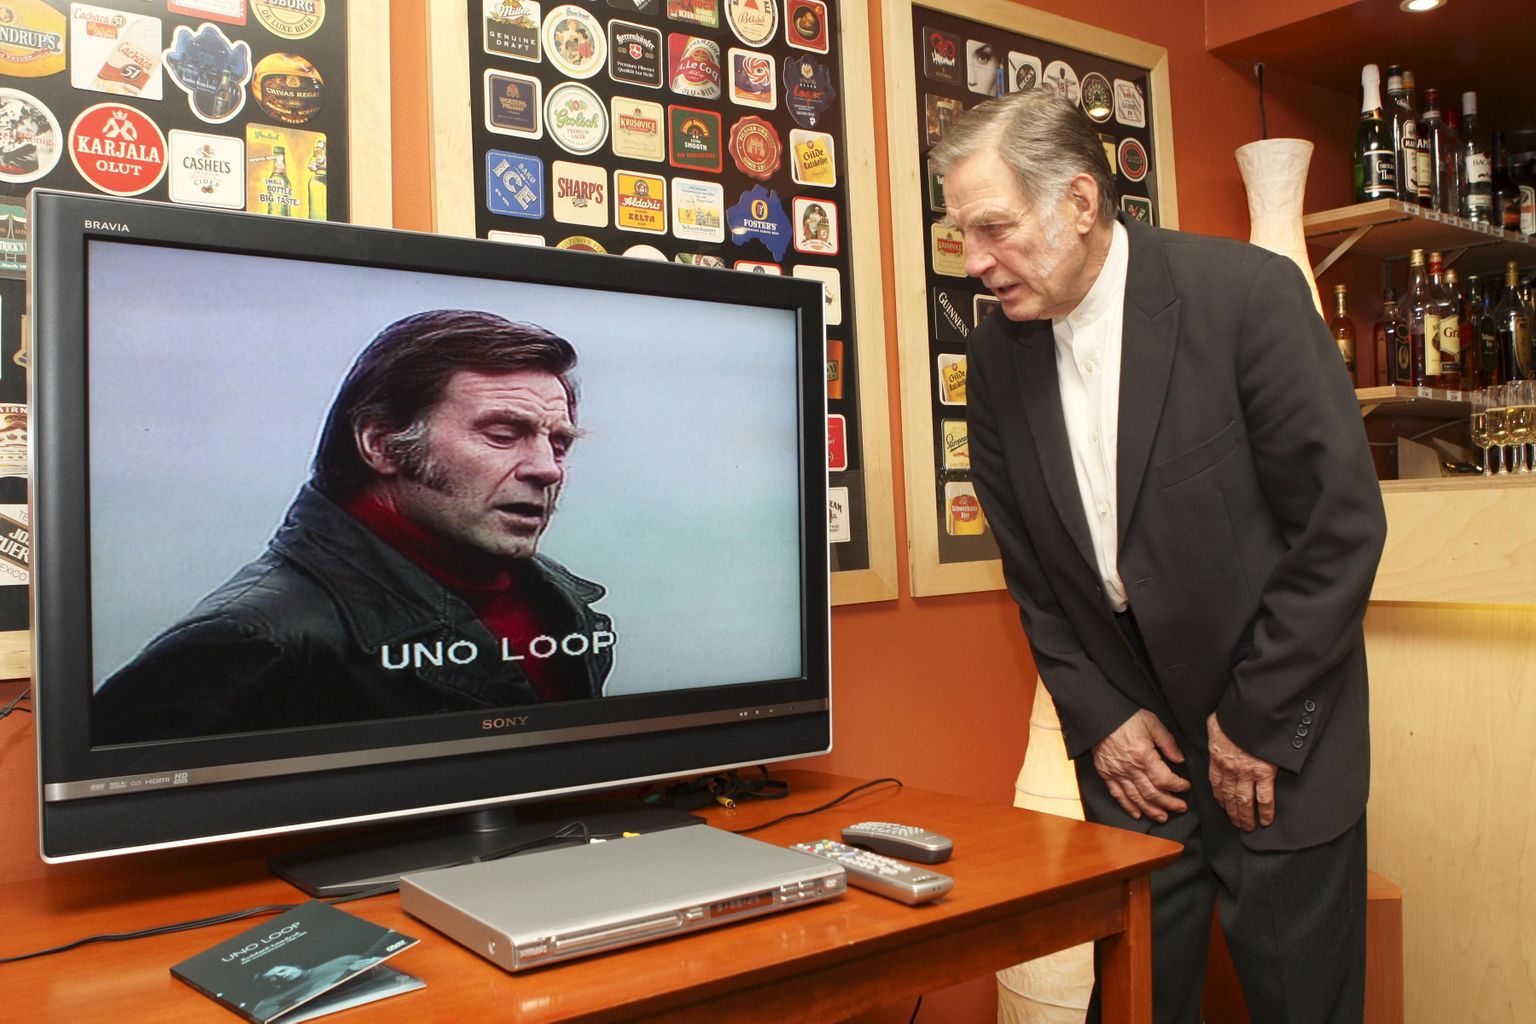 Uno Loop vaatab 2007. aastal välja tulnud DVDd «Kuldsed kaadrid», millel on tema esitused aastatest 1966–1995.